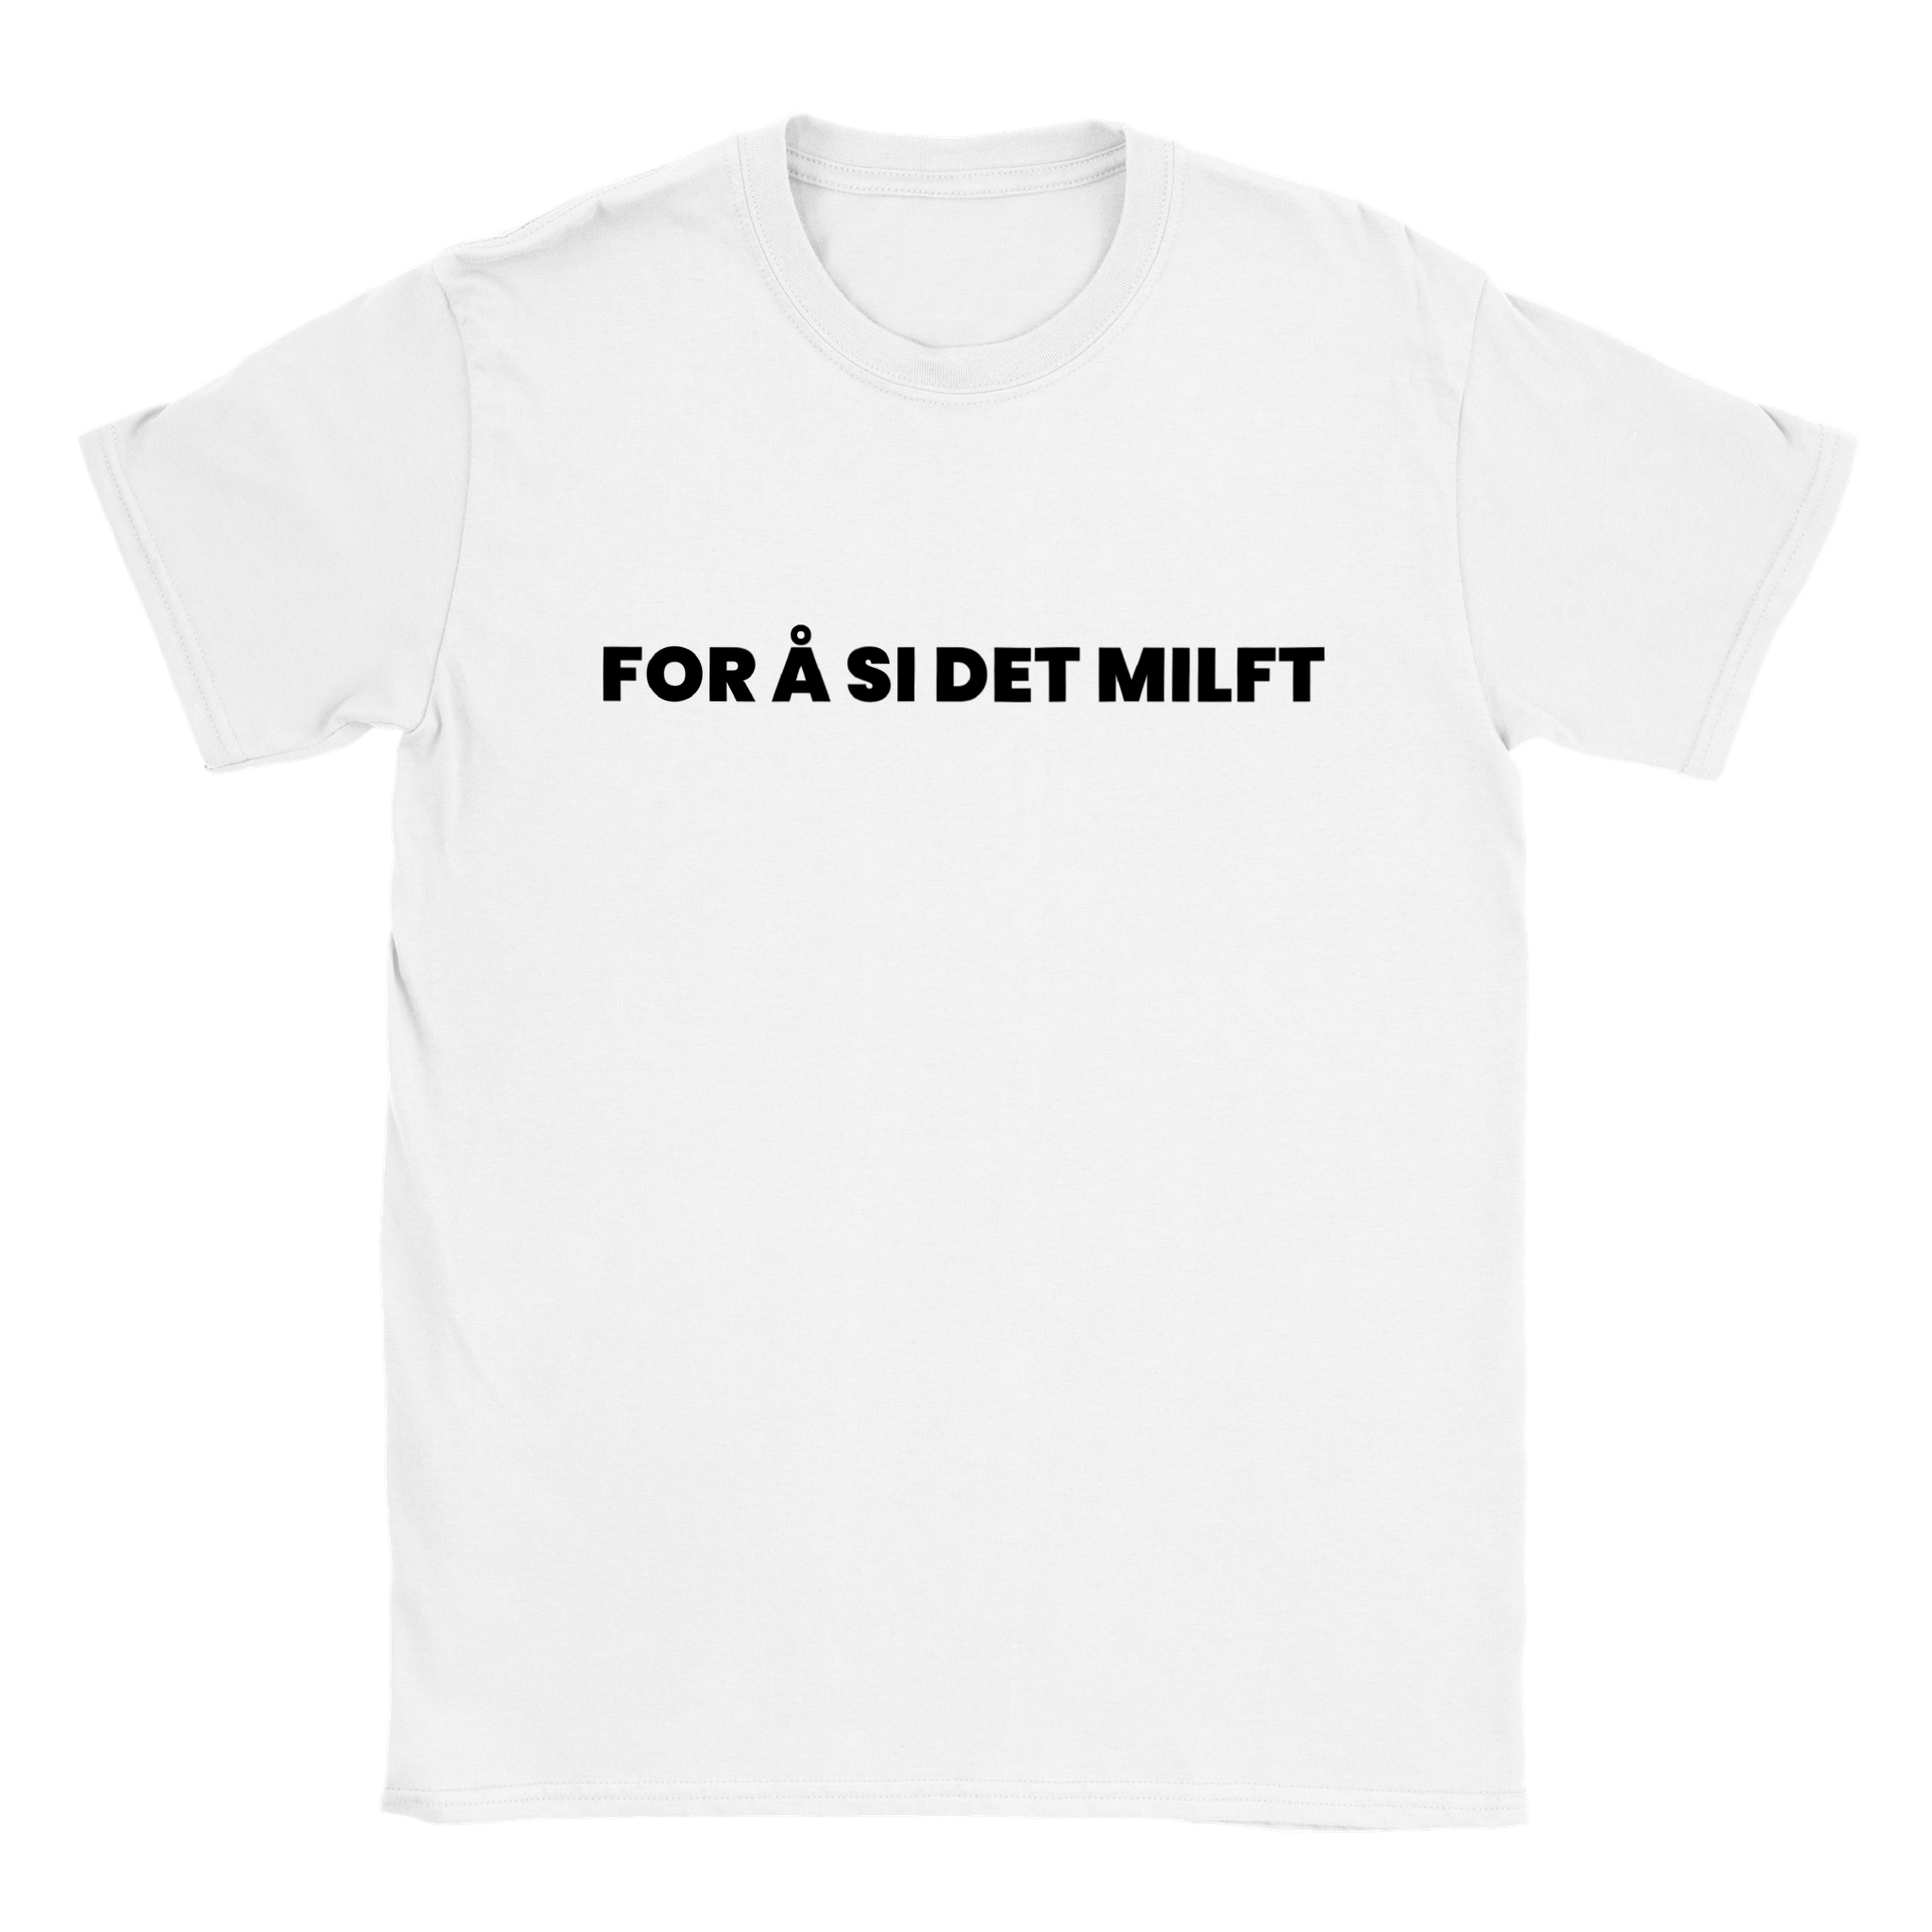 For Å Si Det Milft T-skjorte